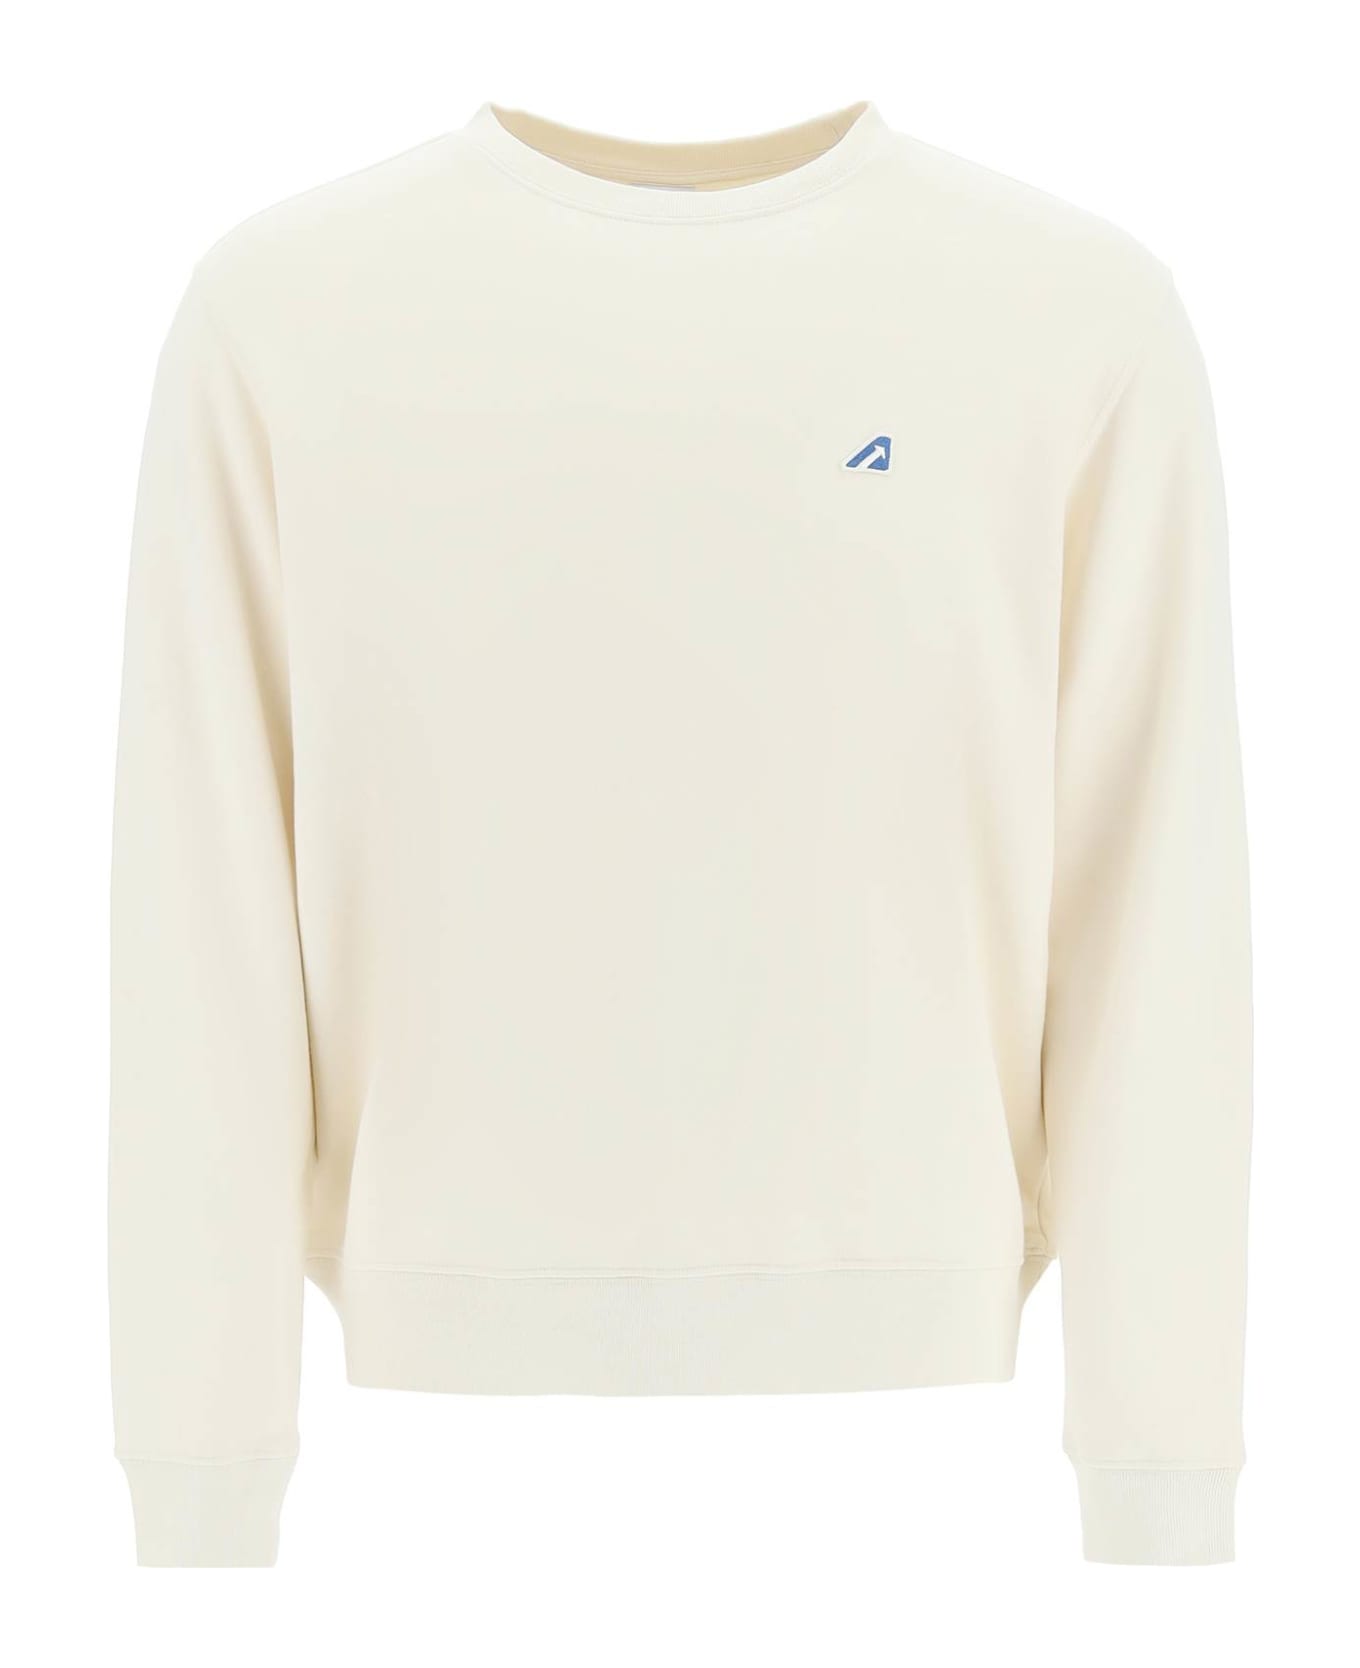 Autry Tennis Academy Sweatshirt - White